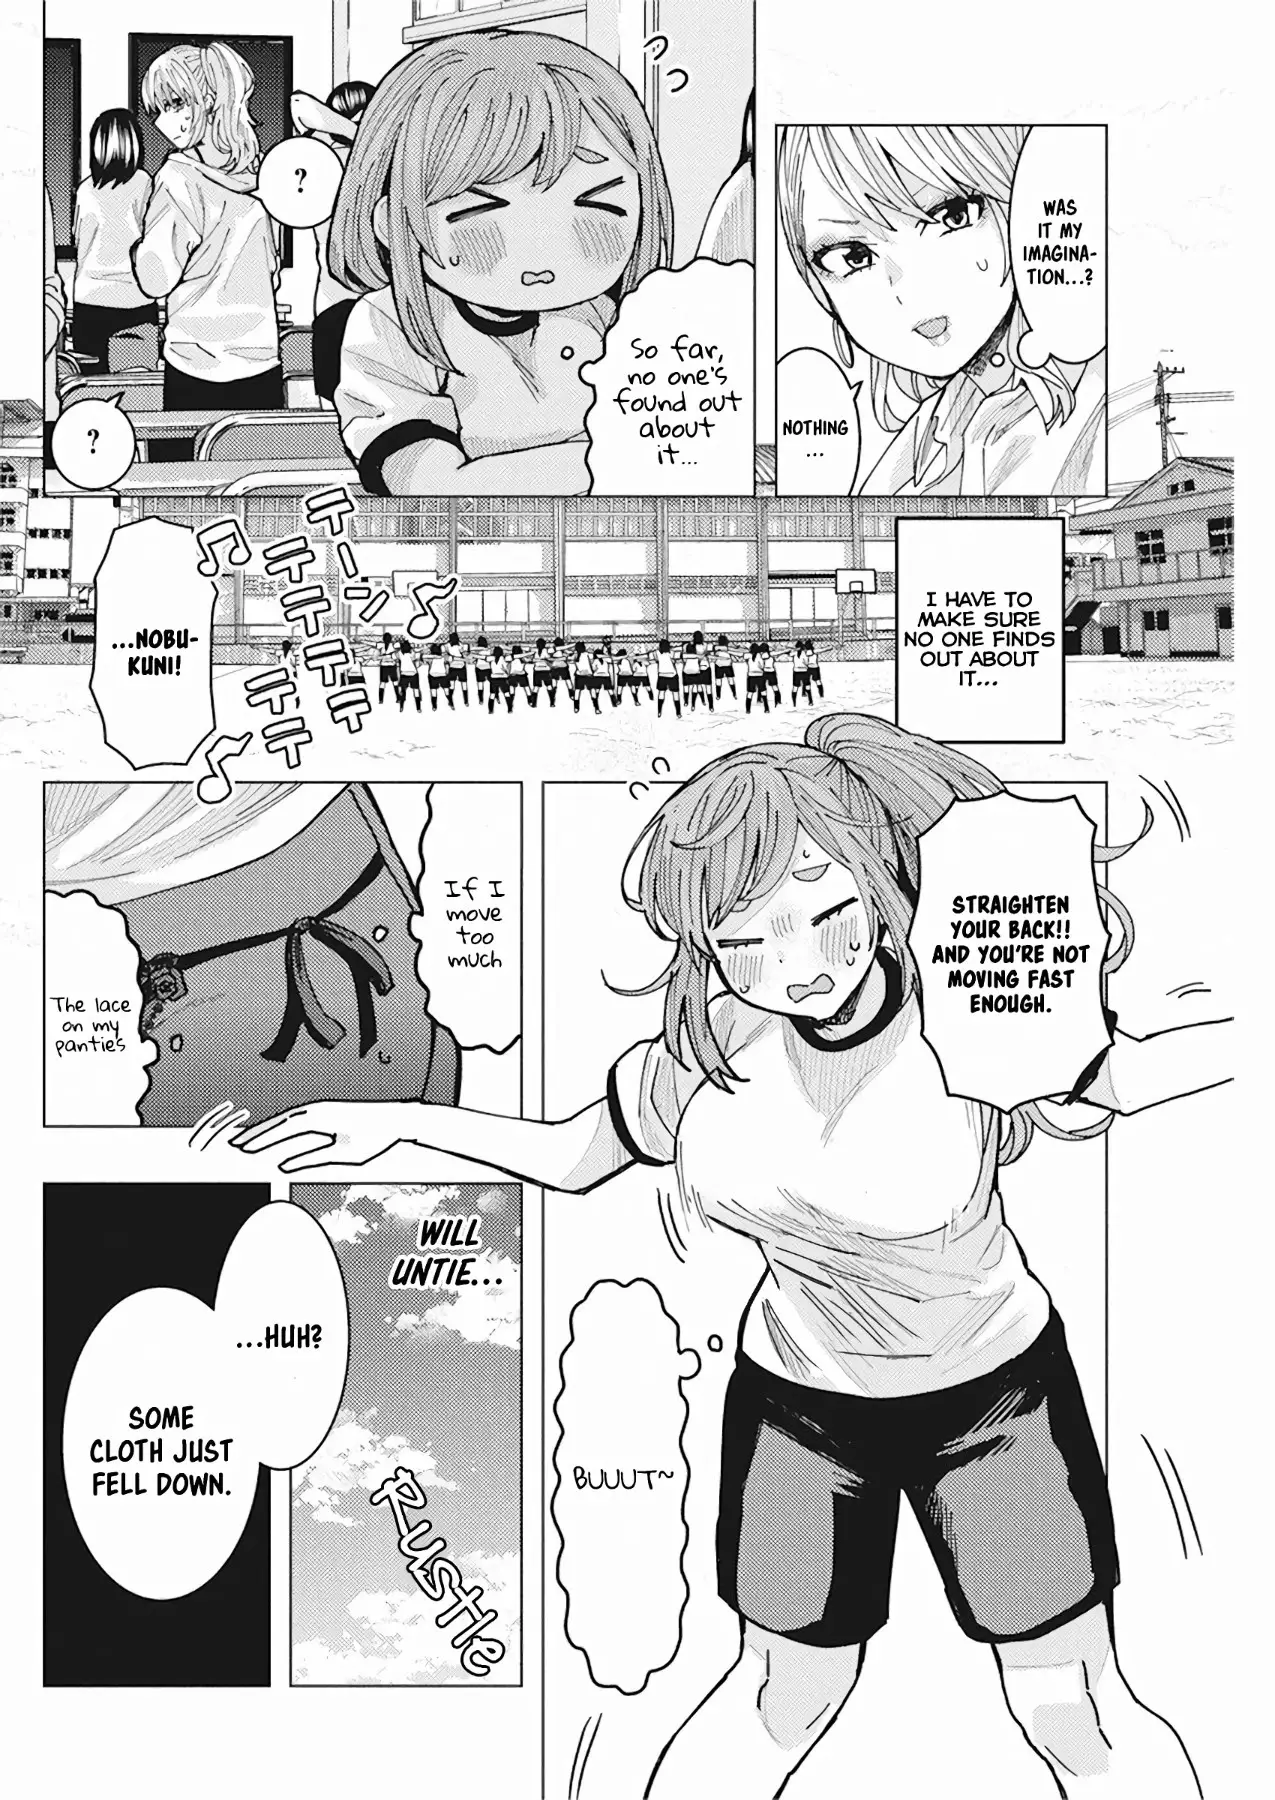 "nobukuni-San" Does She Like Me? - 8 page 11-1ae27a57